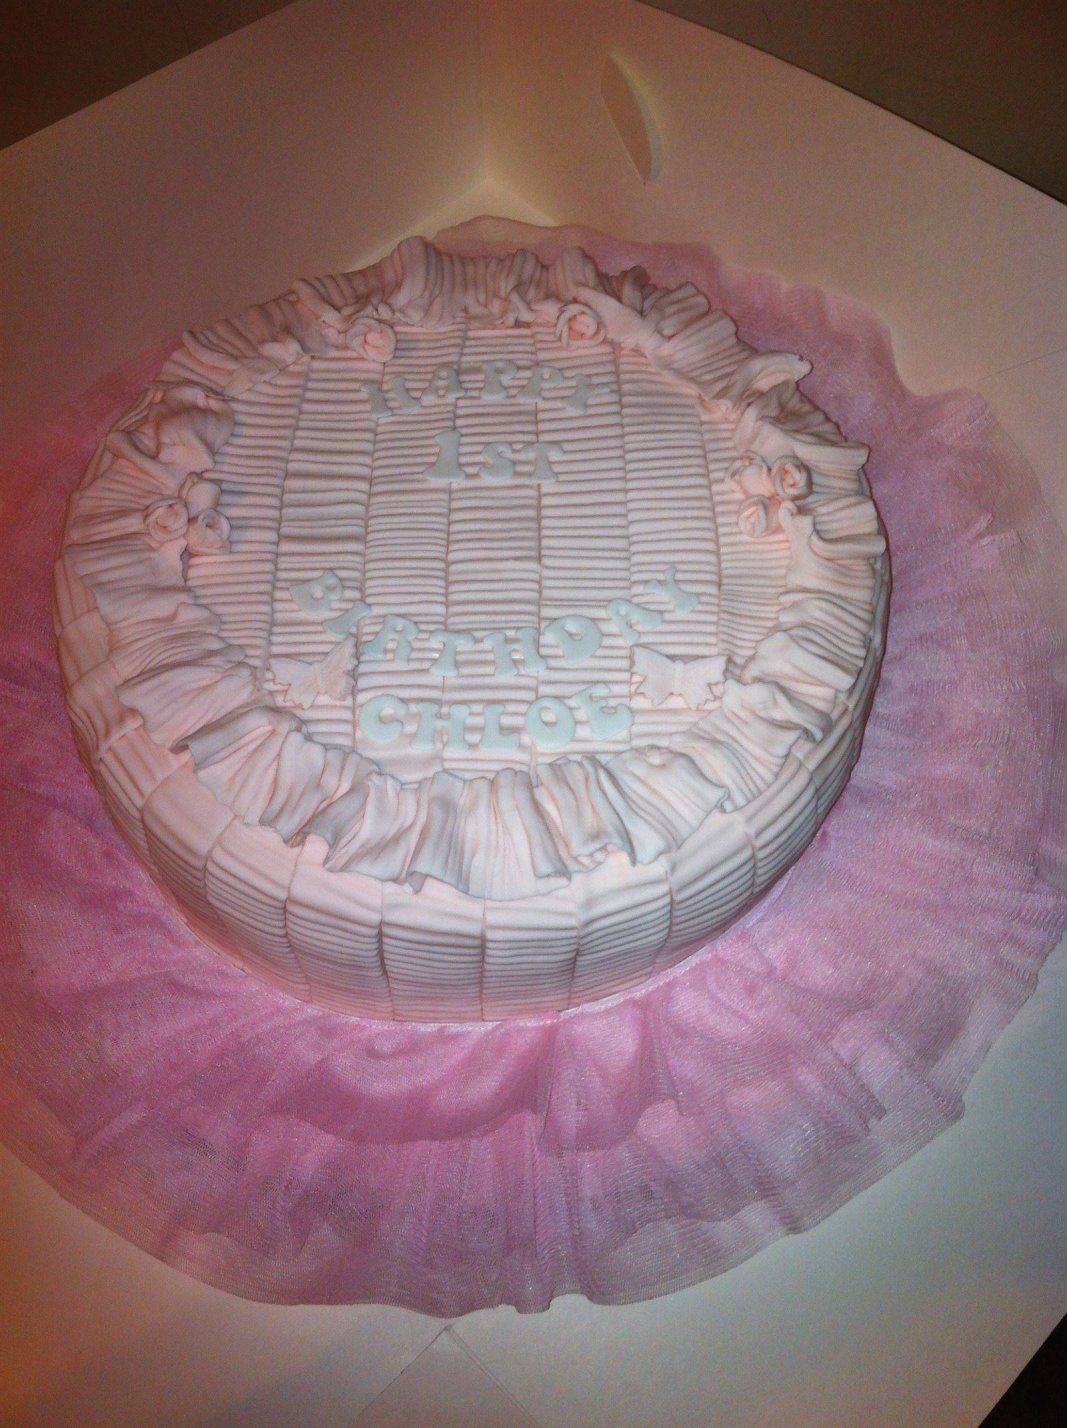 Pink Tutu cake birthday cake
Peekaboo party cakes